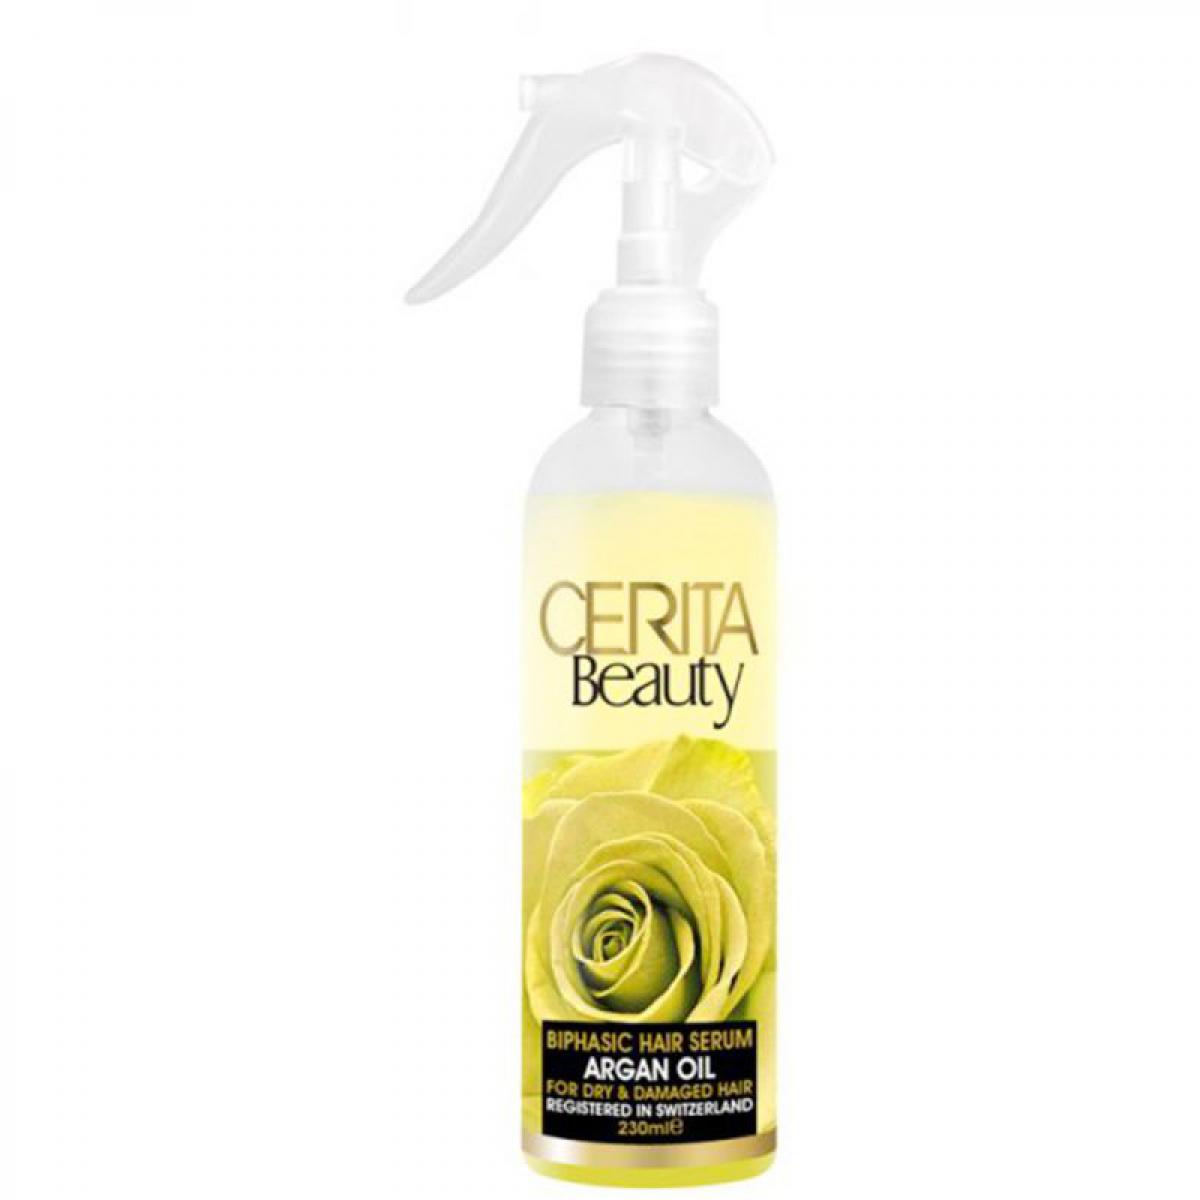 سرم دو فاز مناسب برای موهای خشک و آسیب دیده - Cerita Beauty Biphasic Hair Serum With Argan Oil For Dry & Damaged Hair 230 ml